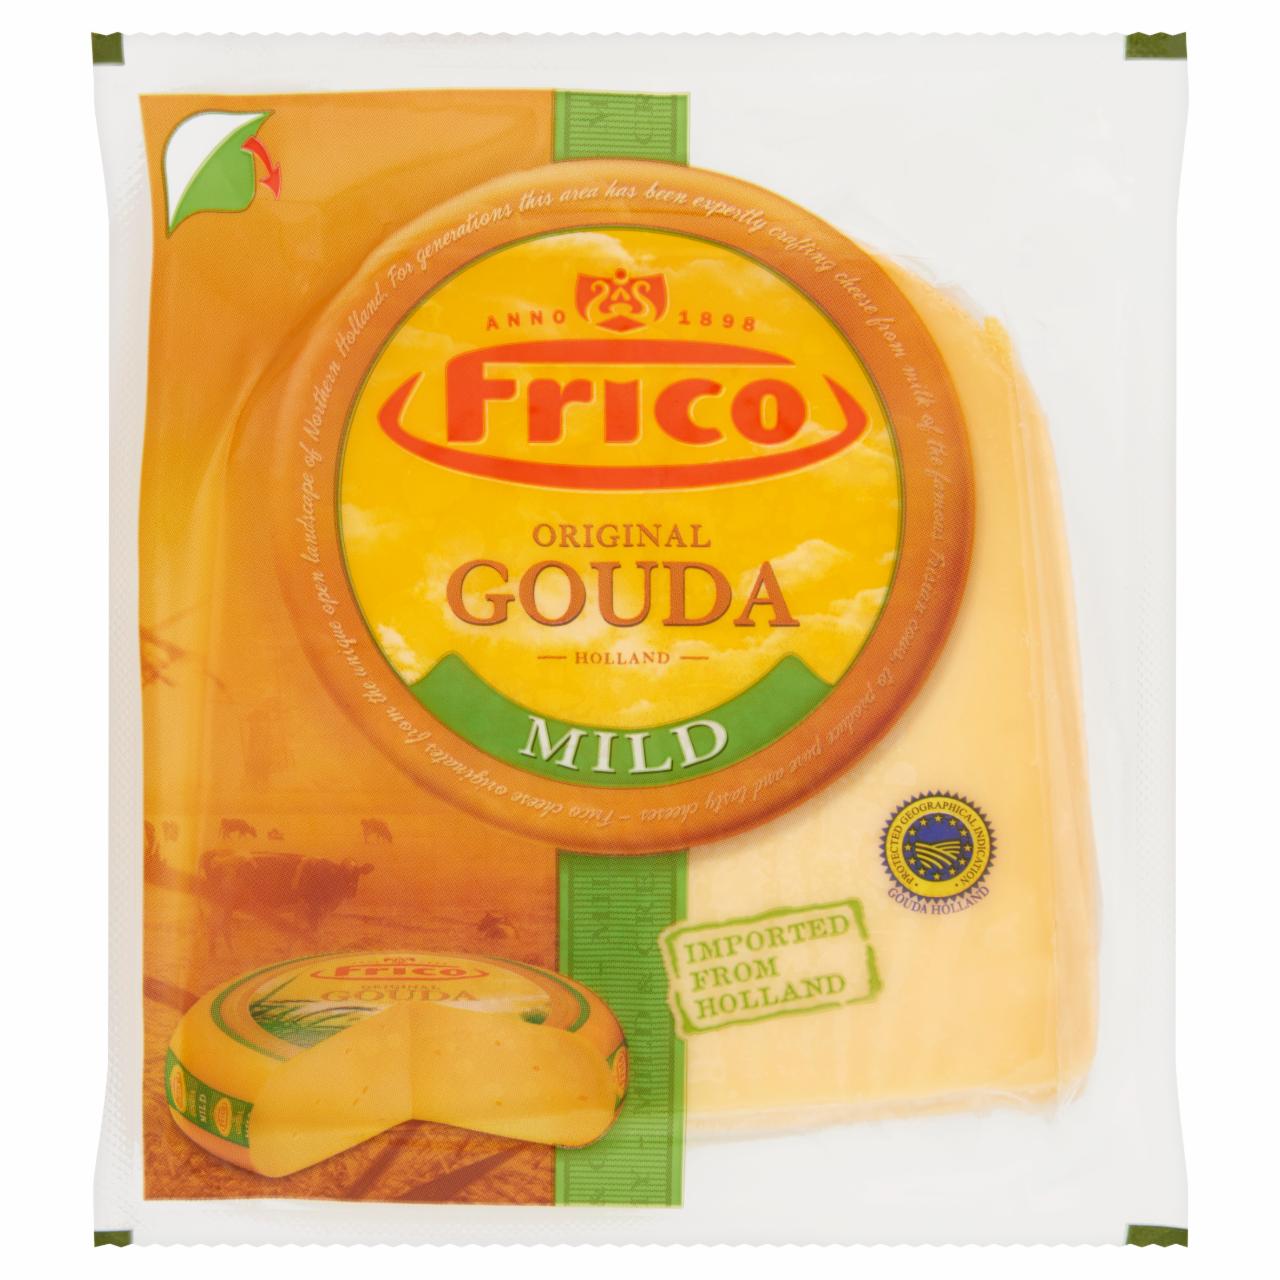 Képek - Frico Gouda darabolt sajt 265 g